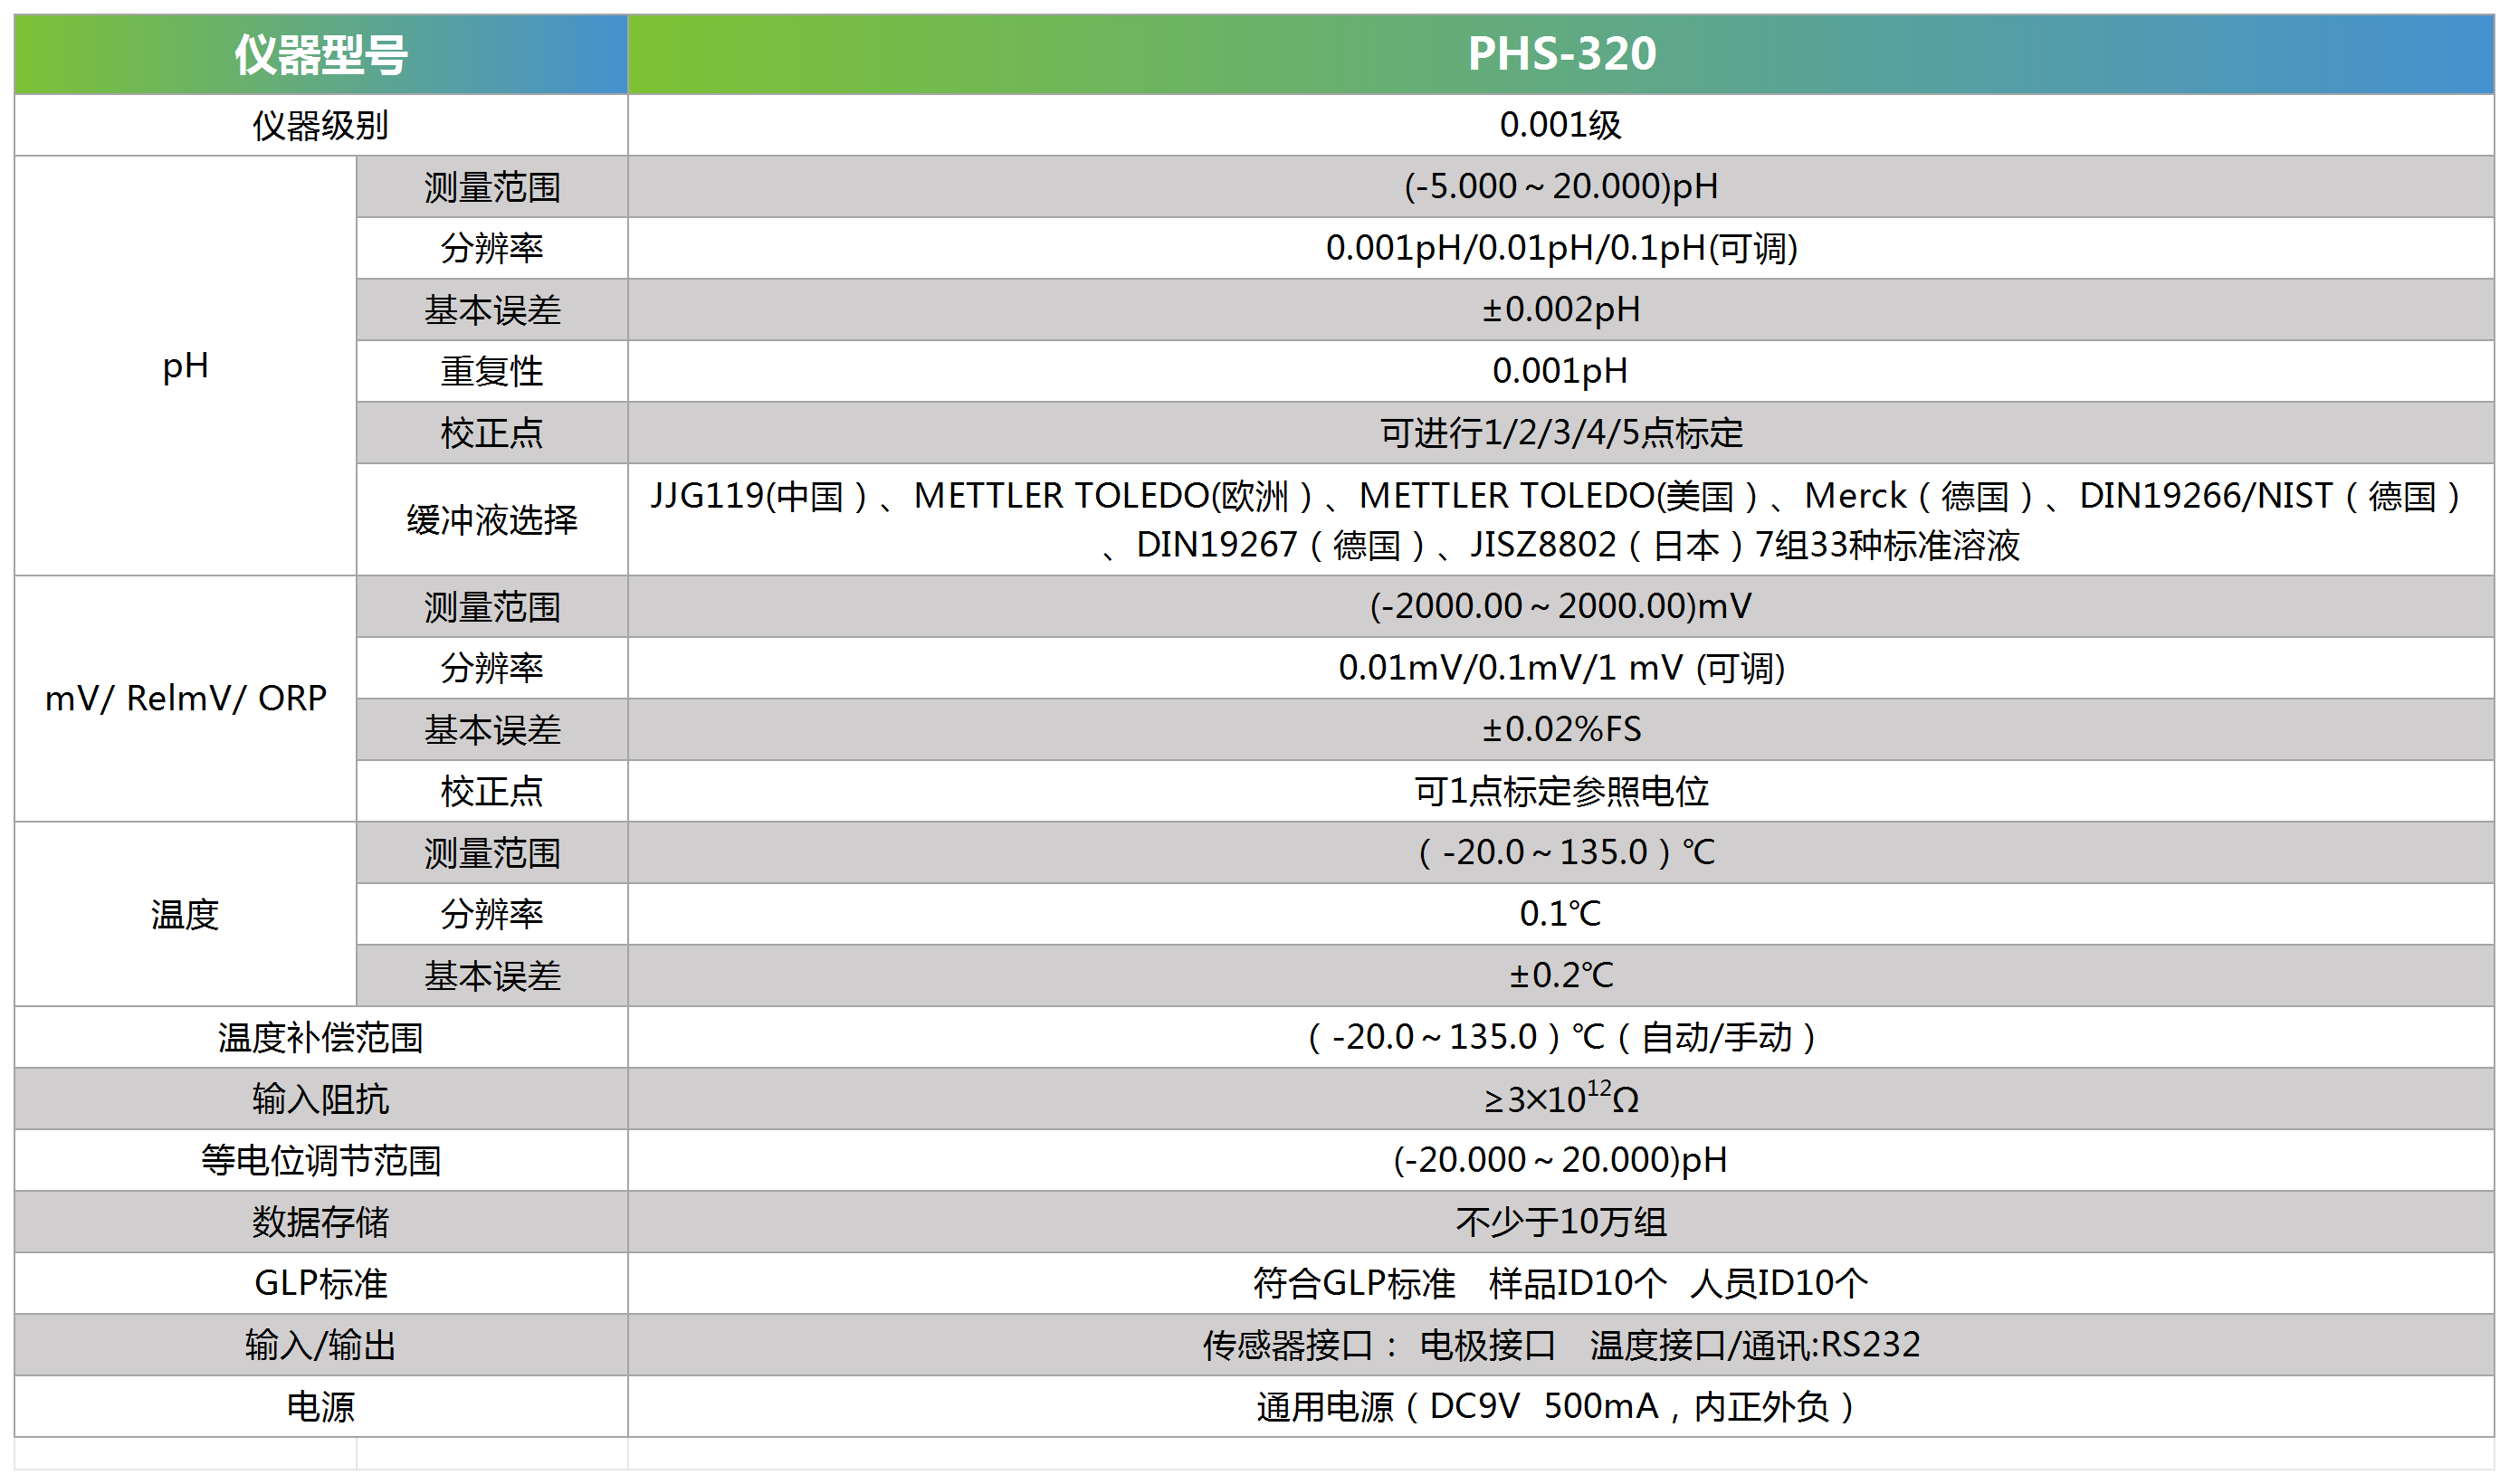 PHS-320技术参数_Sheet1.png